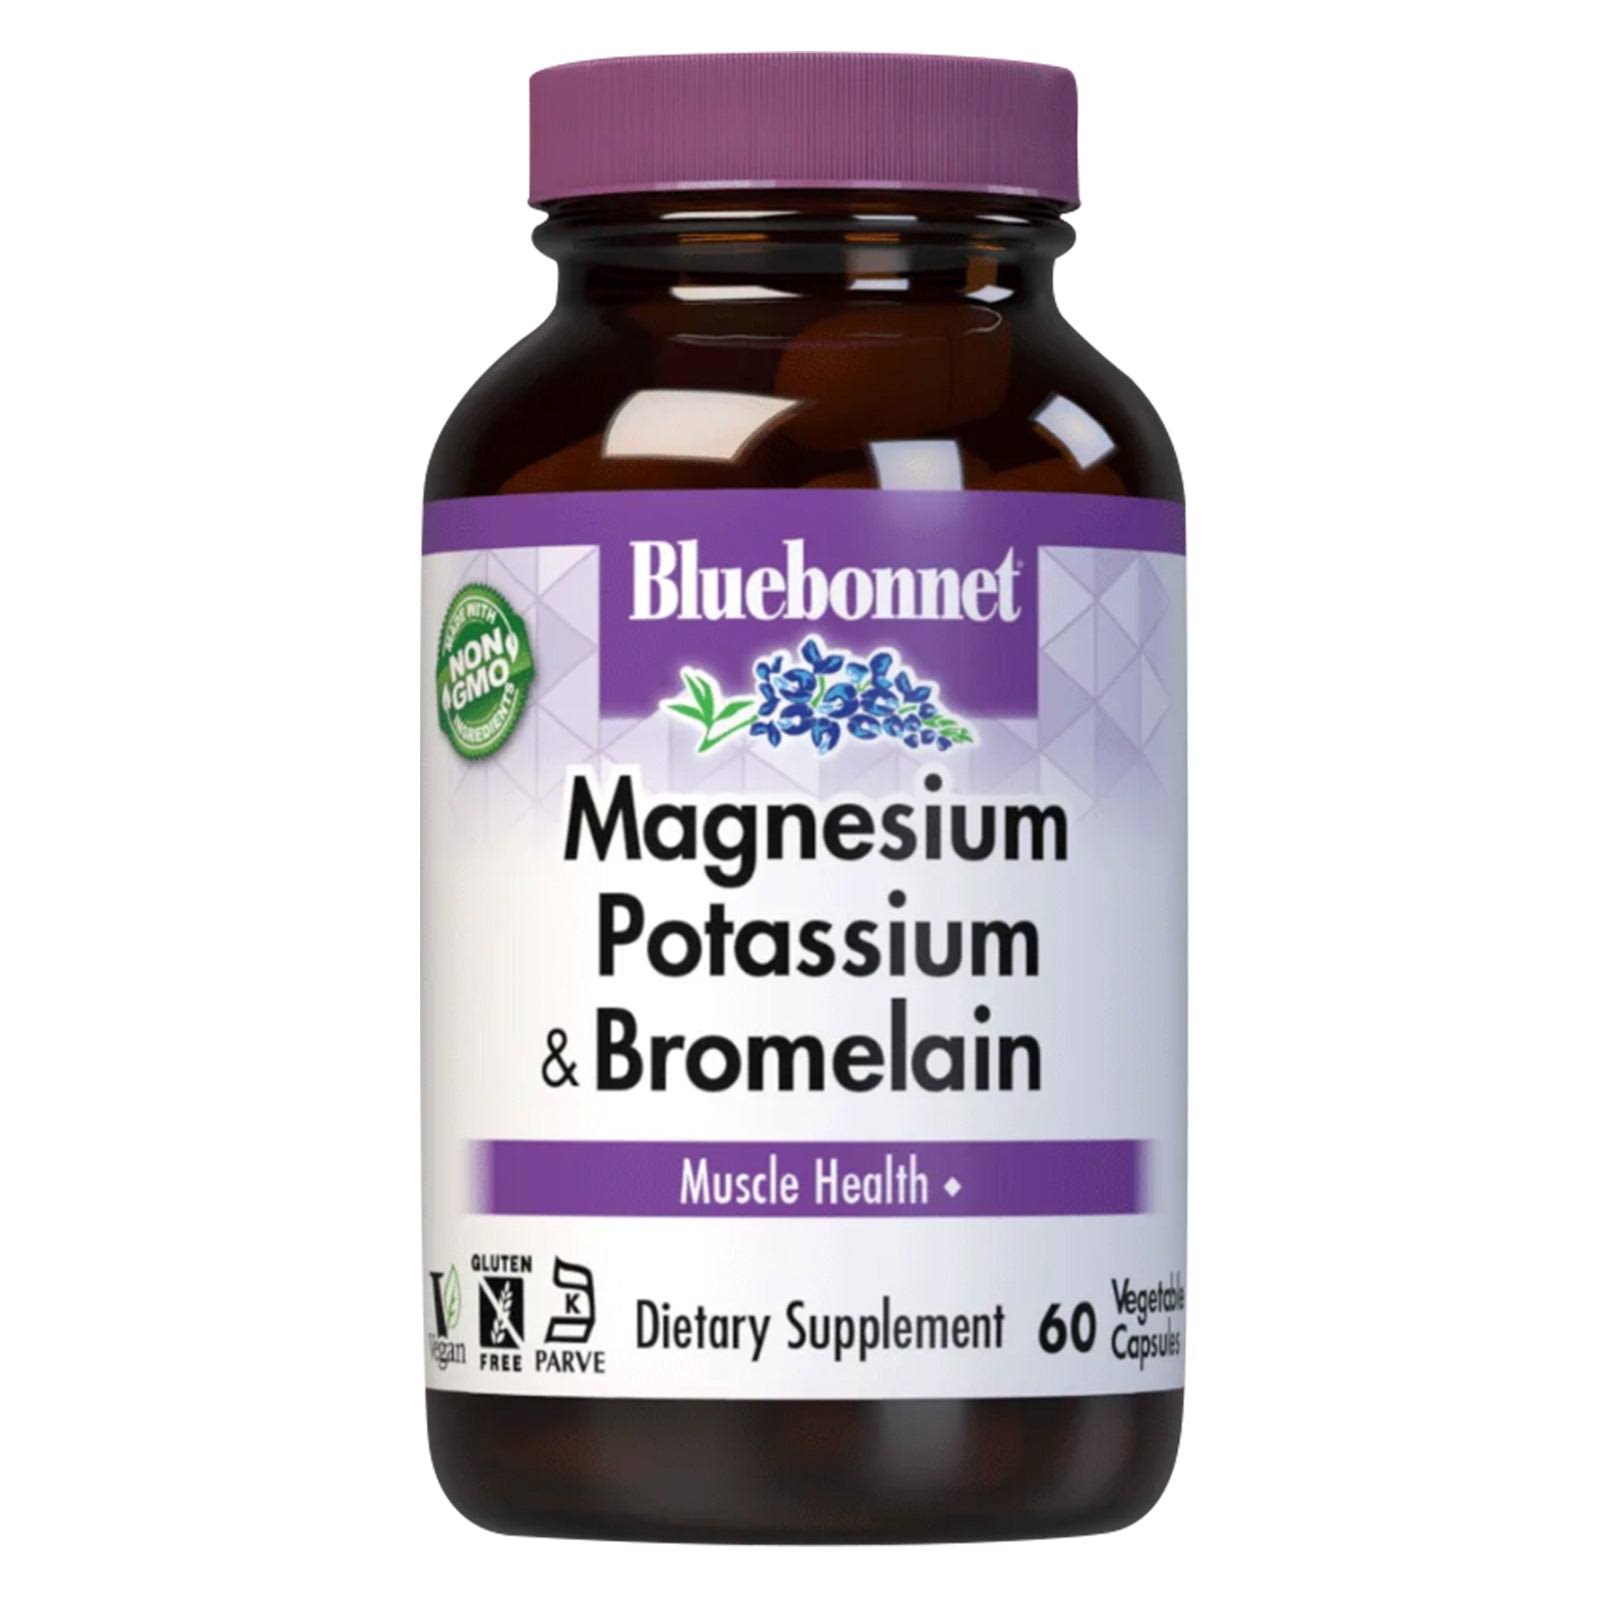 Bluebonnet Magnesium Potassium & Bromelain Dietary Supplement - 60 Capsules